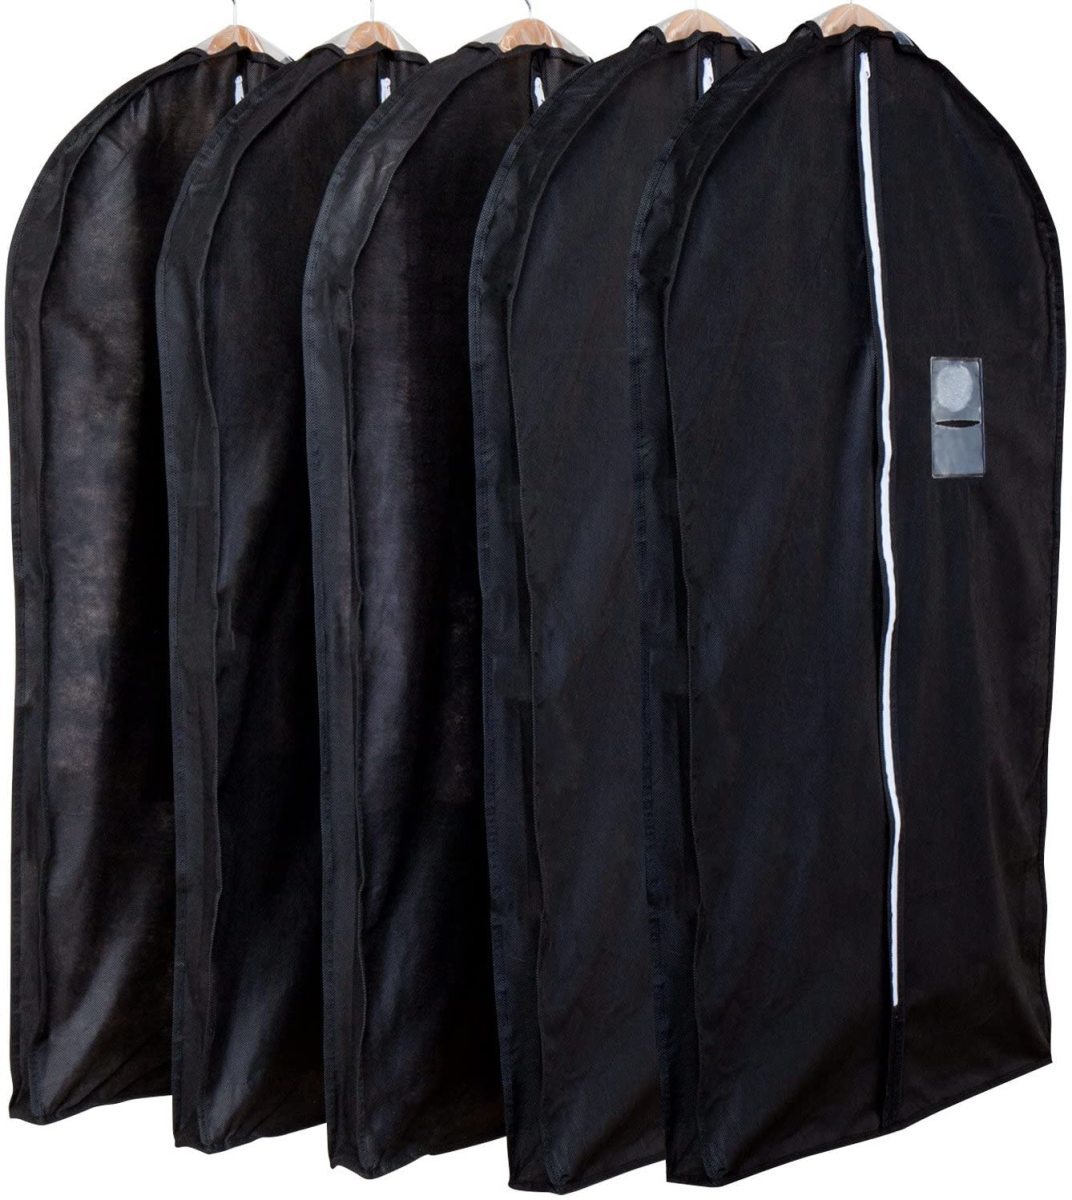 アストロ 洋服カバー マチ付 5枚 スーツサイズ 黒 不織布 ファスナー 透明窓 防虫剤ポケット付き 底までカバー 110-45_画像1